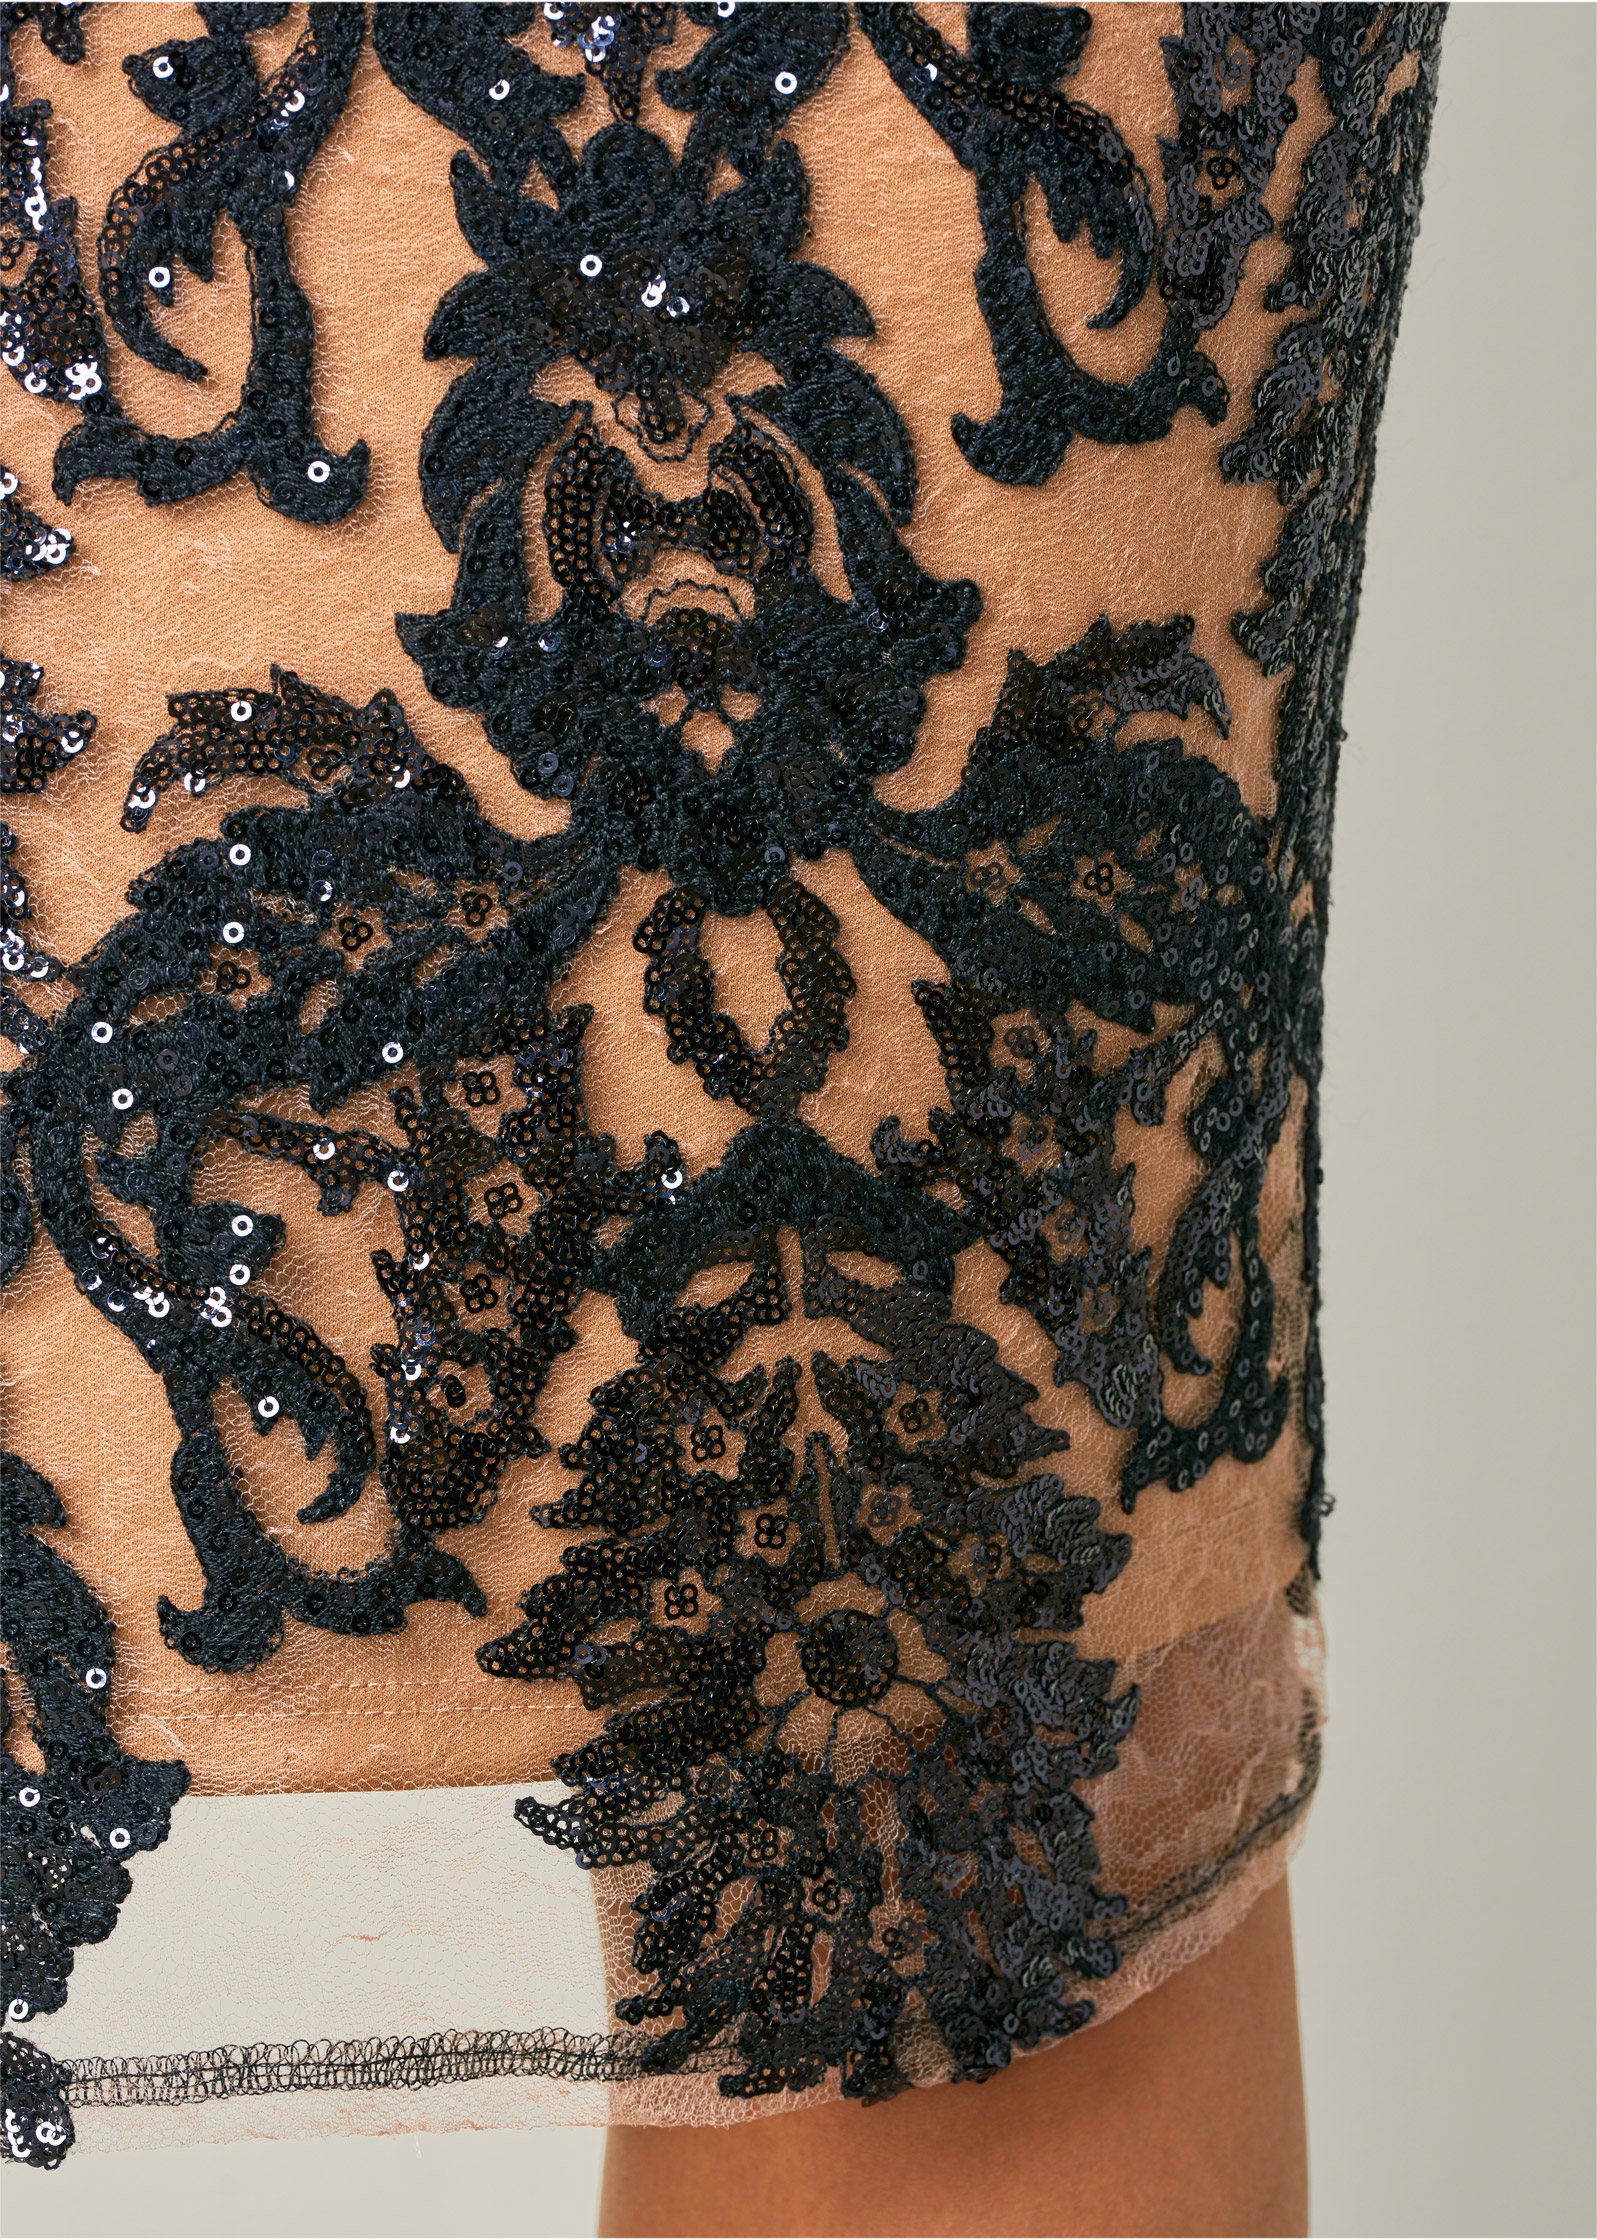 Sequin Cold-Shoulder Dress in Black Multi | VENUS